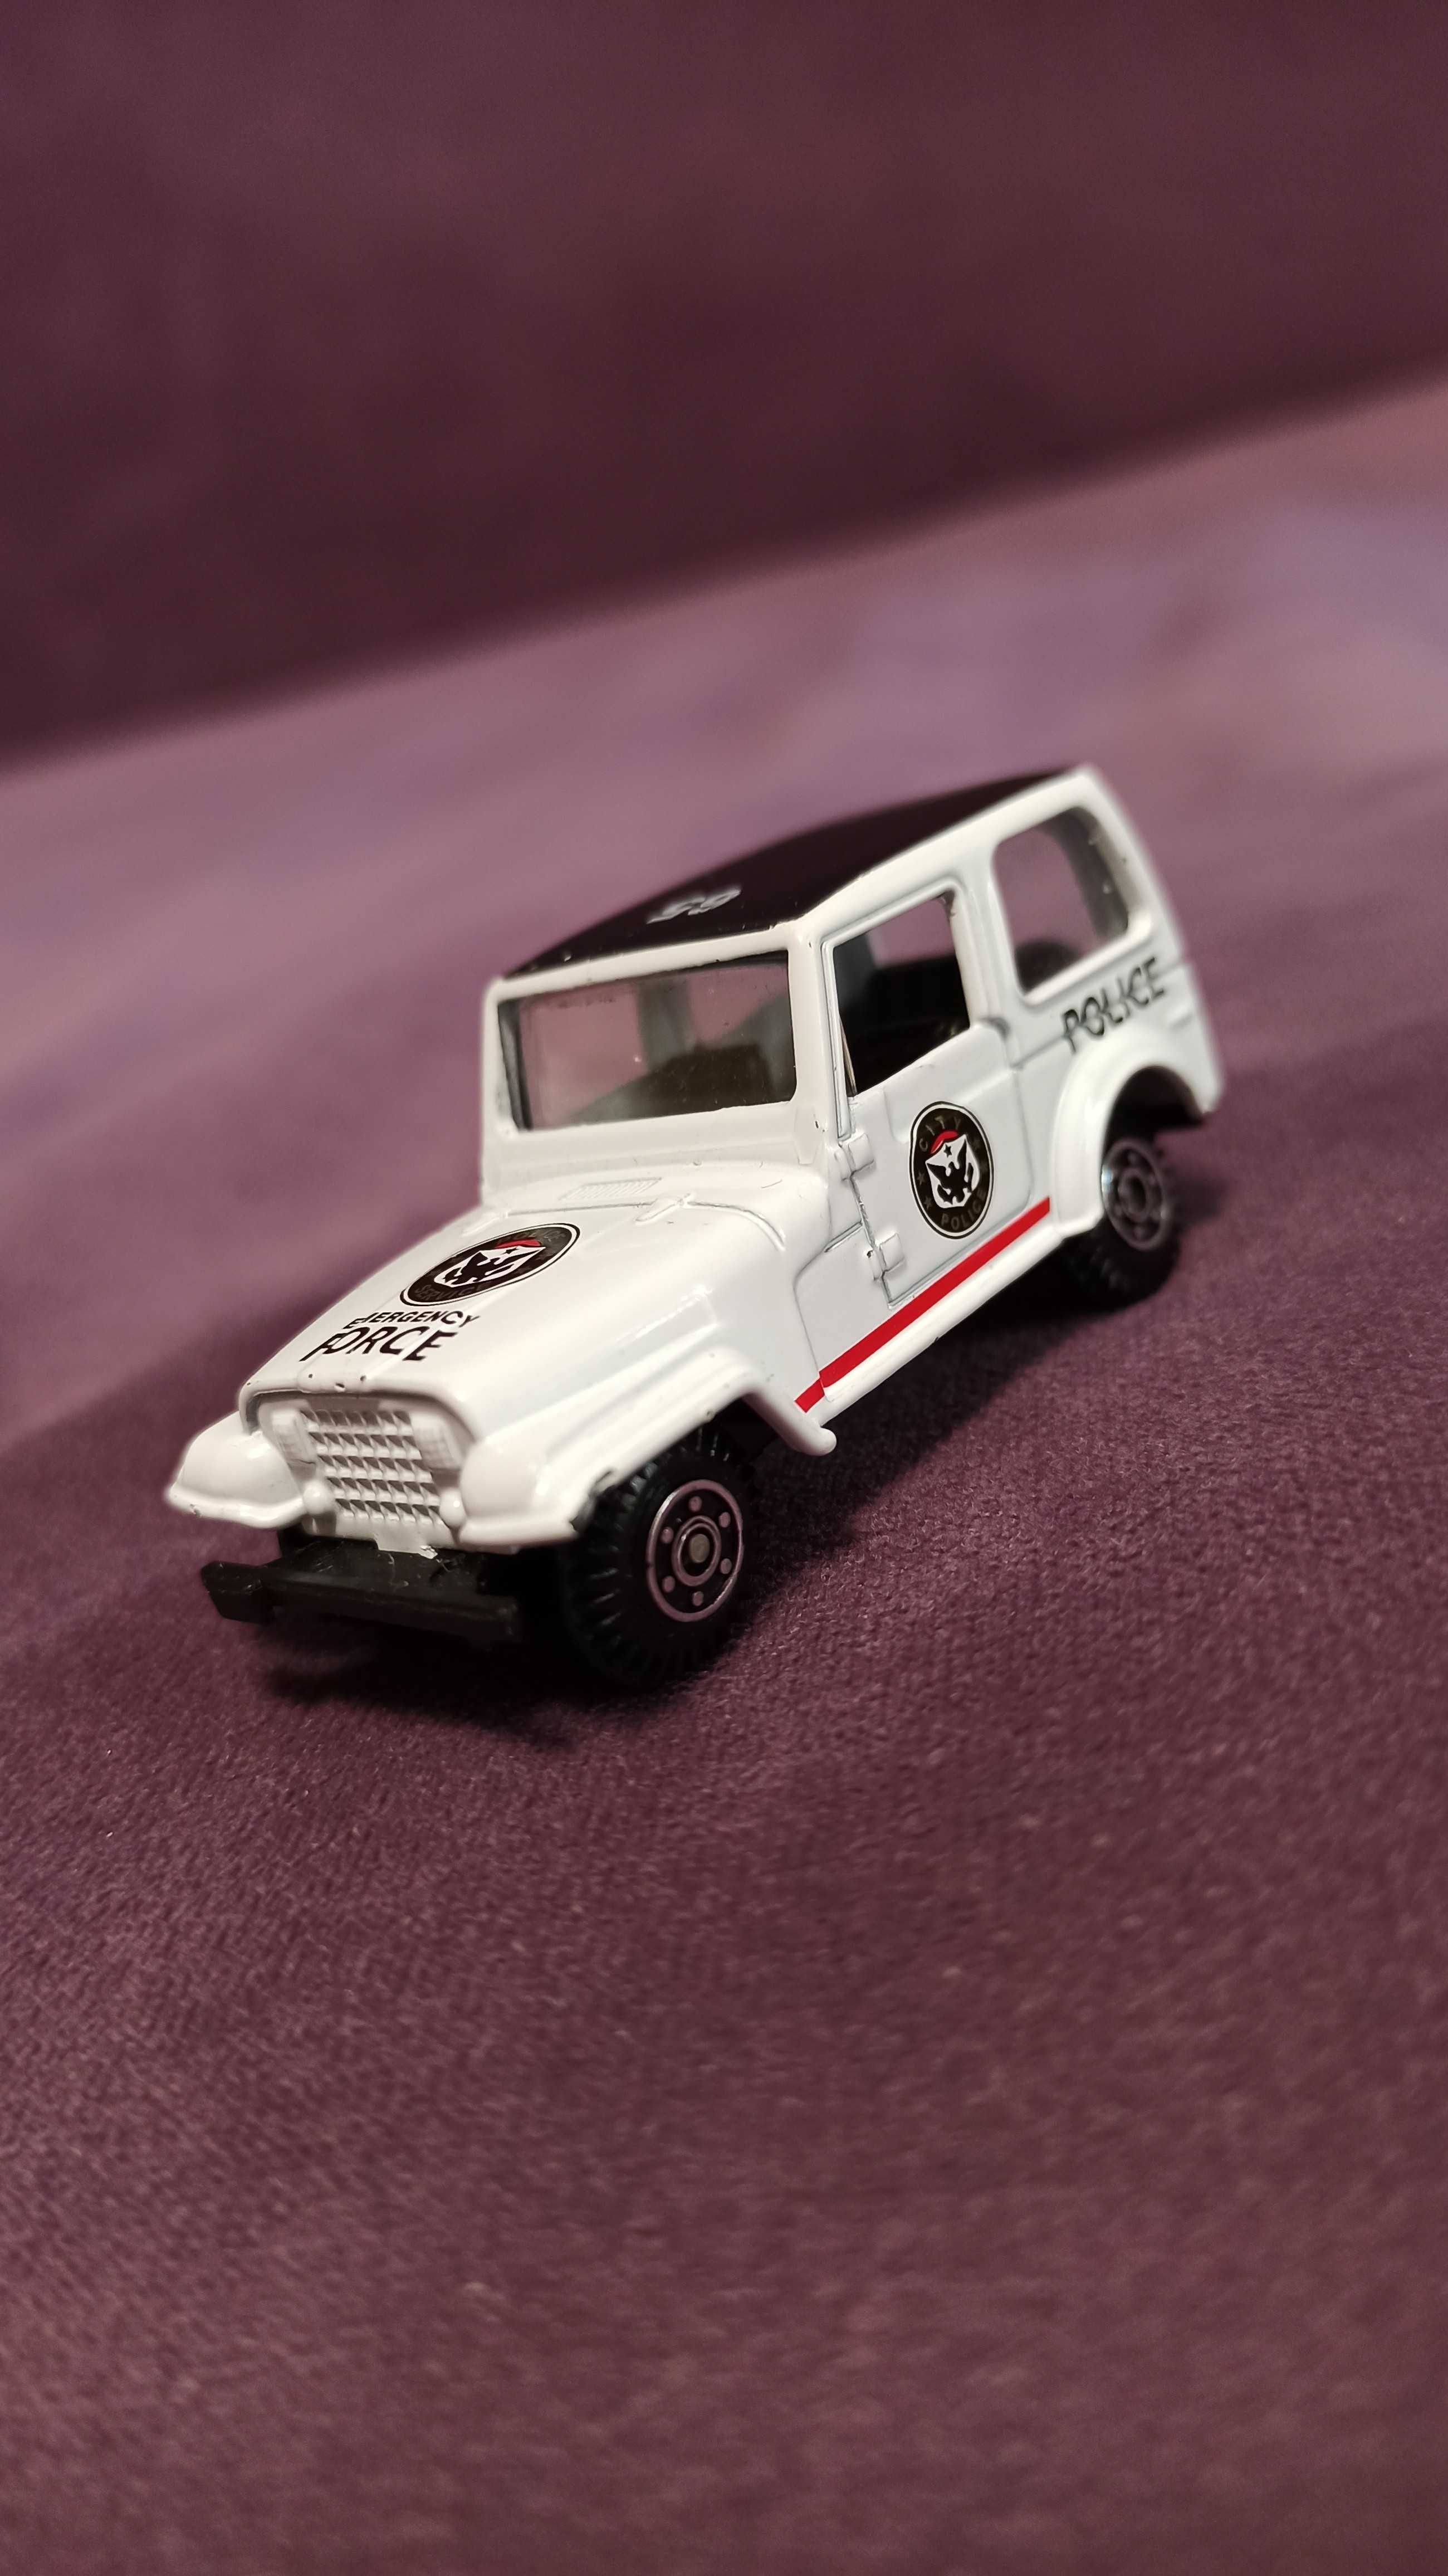 Модель Welly Jeep, 1:60, 2014 года.